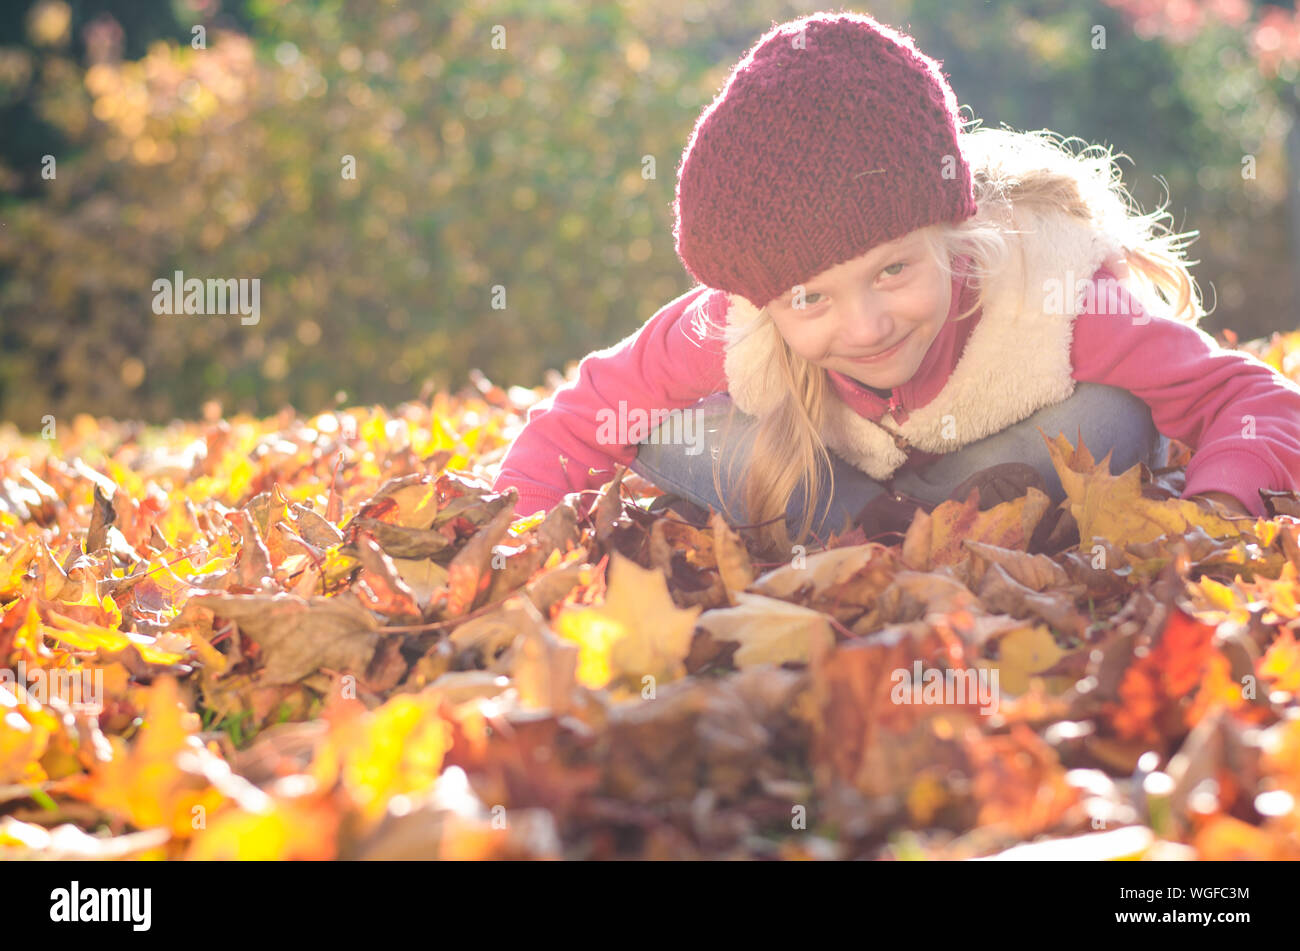 Portrait of smiling girl en atmosphère d'automne colorés assis parmi les feuilles jaunes et orange vif Banque D'Images